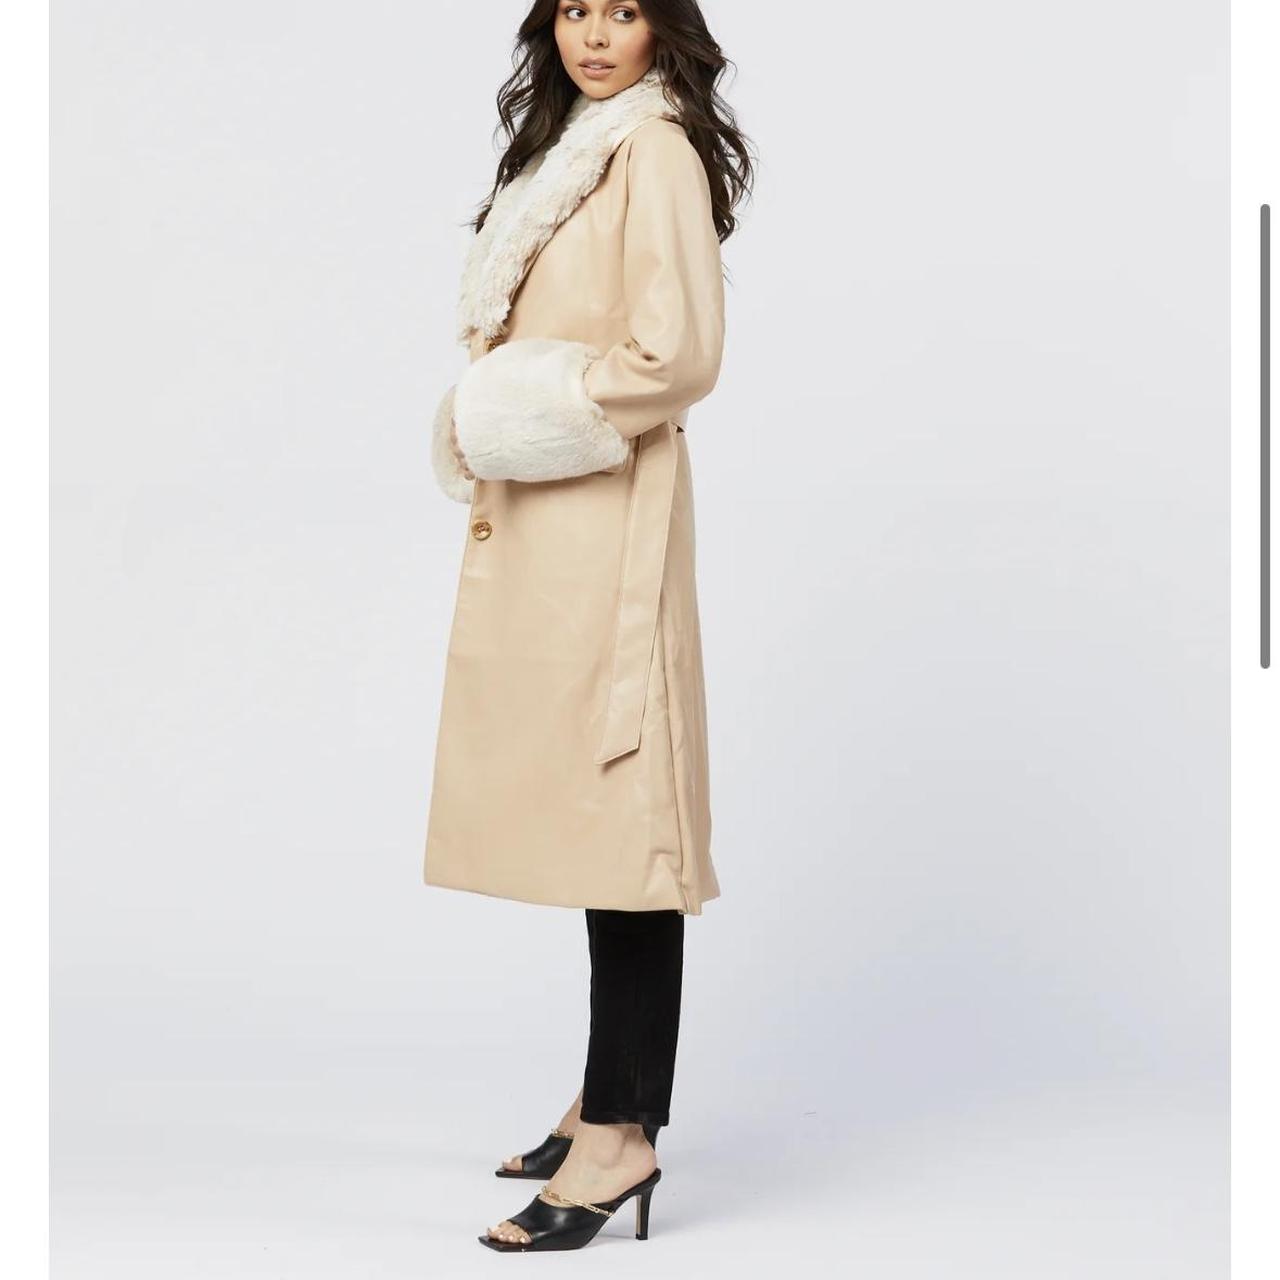 Faux fur trim coat by Shaci. Retails for $295.00... - Depop